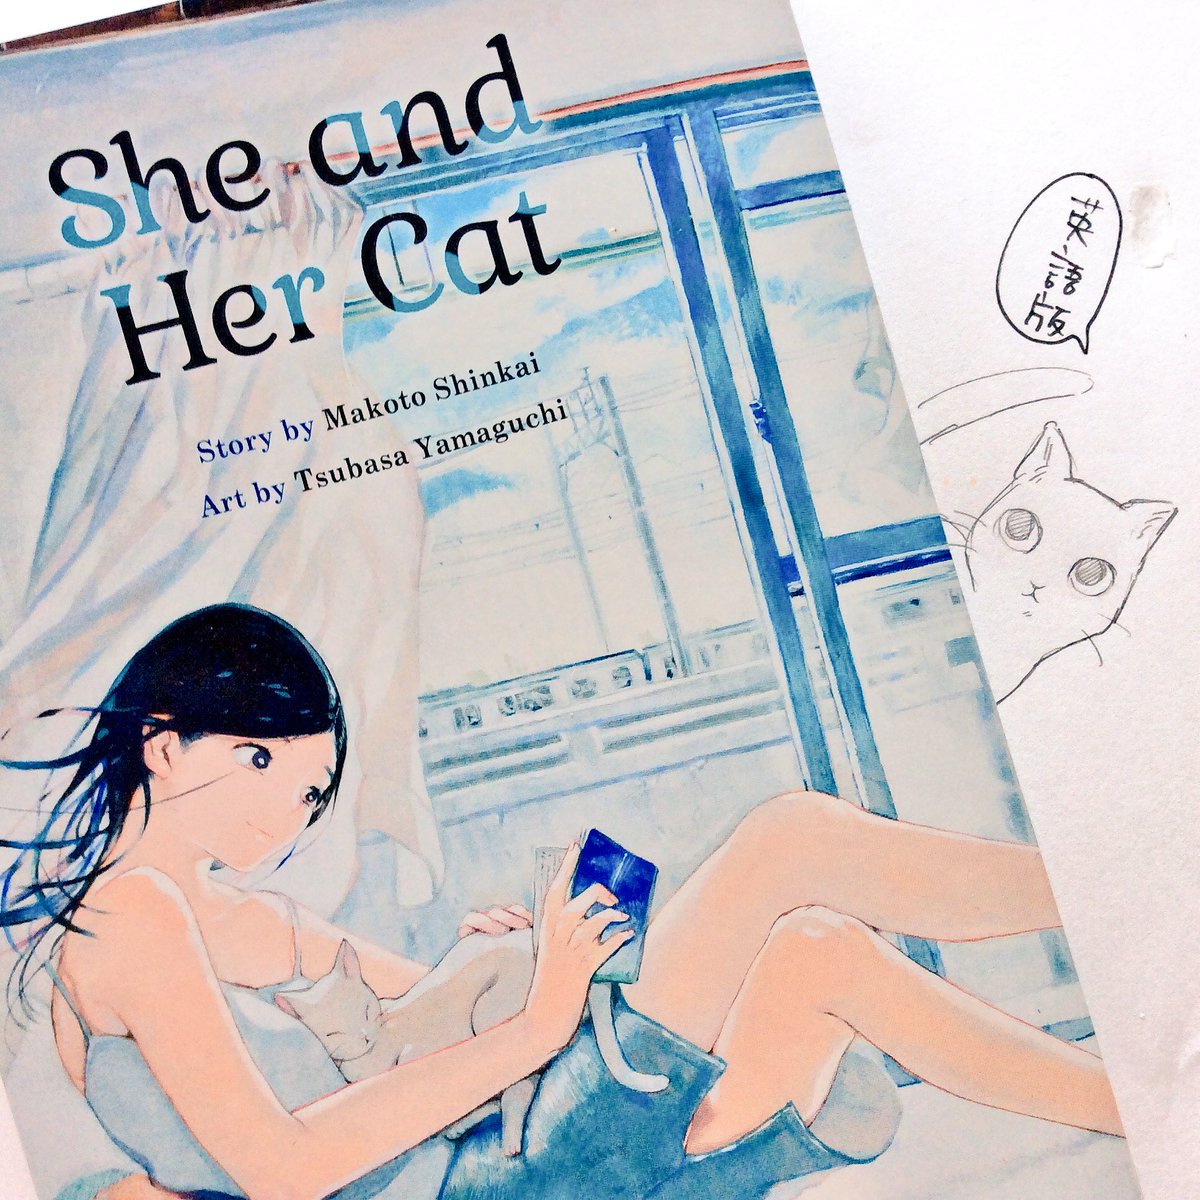 【おしらせ】新海誠監督原作「彼女と彼女の猫」の英語版を頂きました！本棚の文字も英語に直されててすごく細かくてびっくり…機会があればぜひ手にとってみてみてください。 